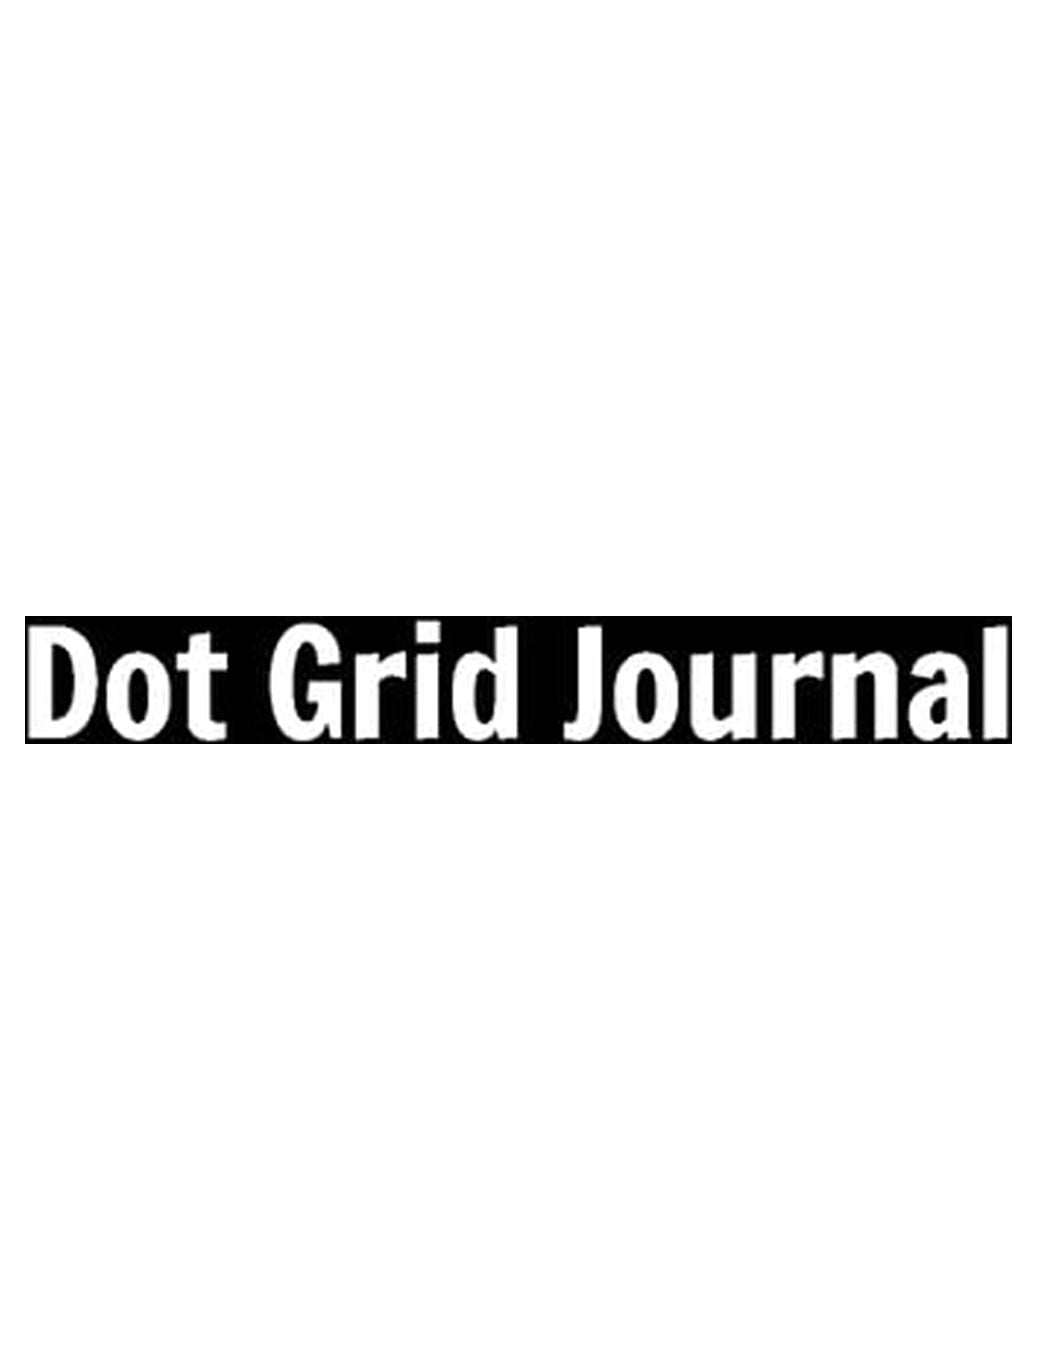 URSUNSHINE Dotted Notebook/Journal - Dot Grid - Hard Cover - Black